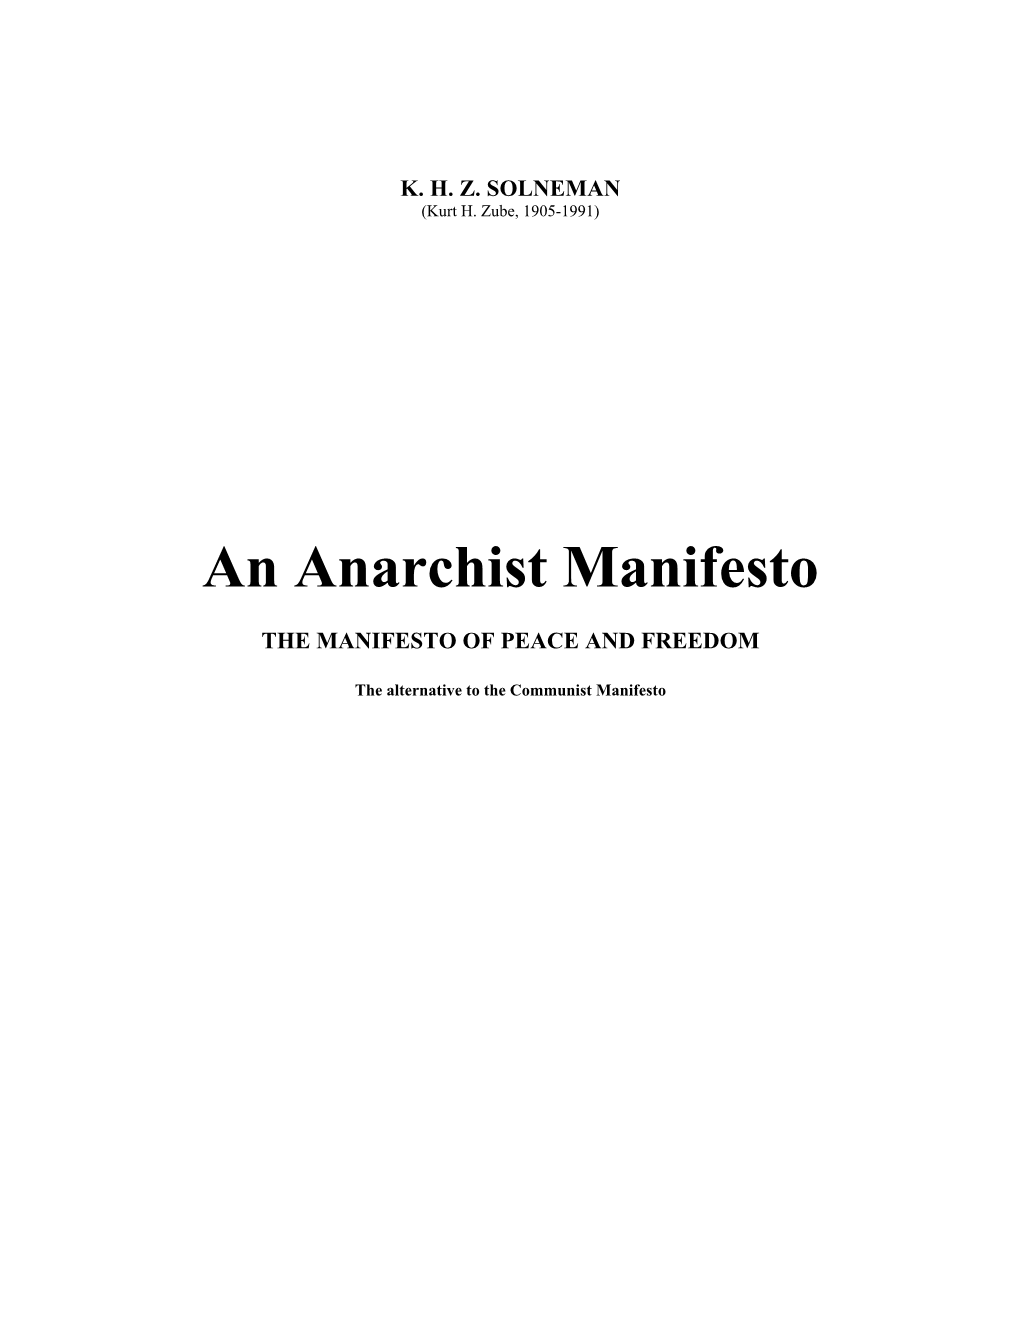 An Anarchist Manifesto